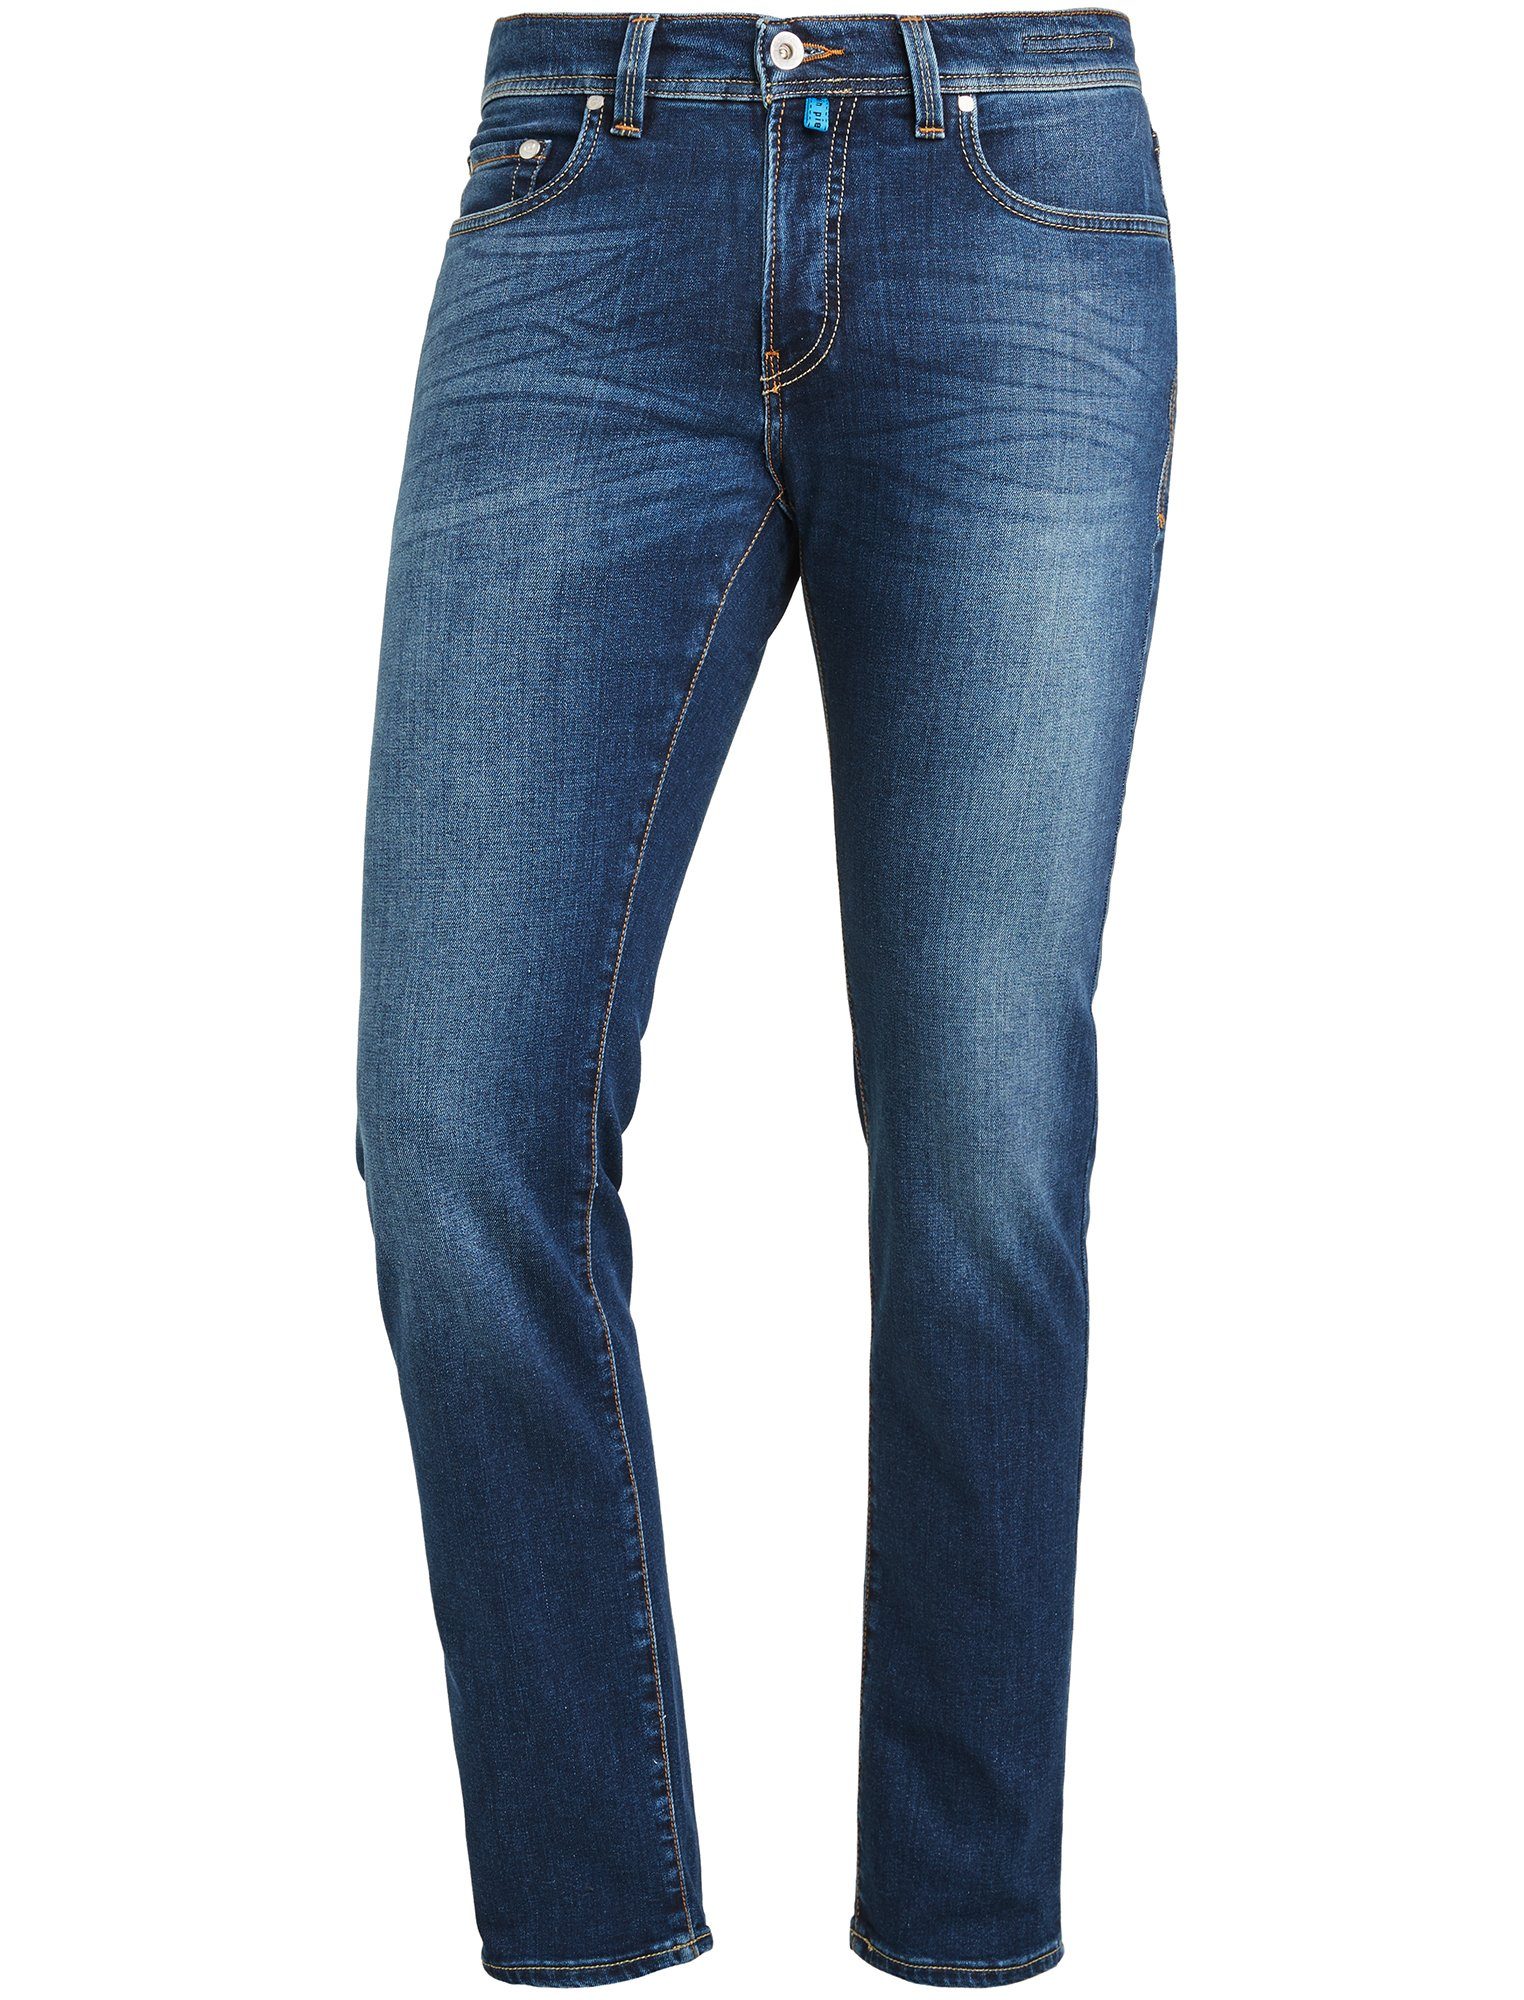 FUTUREFLEX 3451 used 5-Pocket-Jeans LYON 8880. CARDIN PIERRE Pierre washed Cardin blue vintage dark